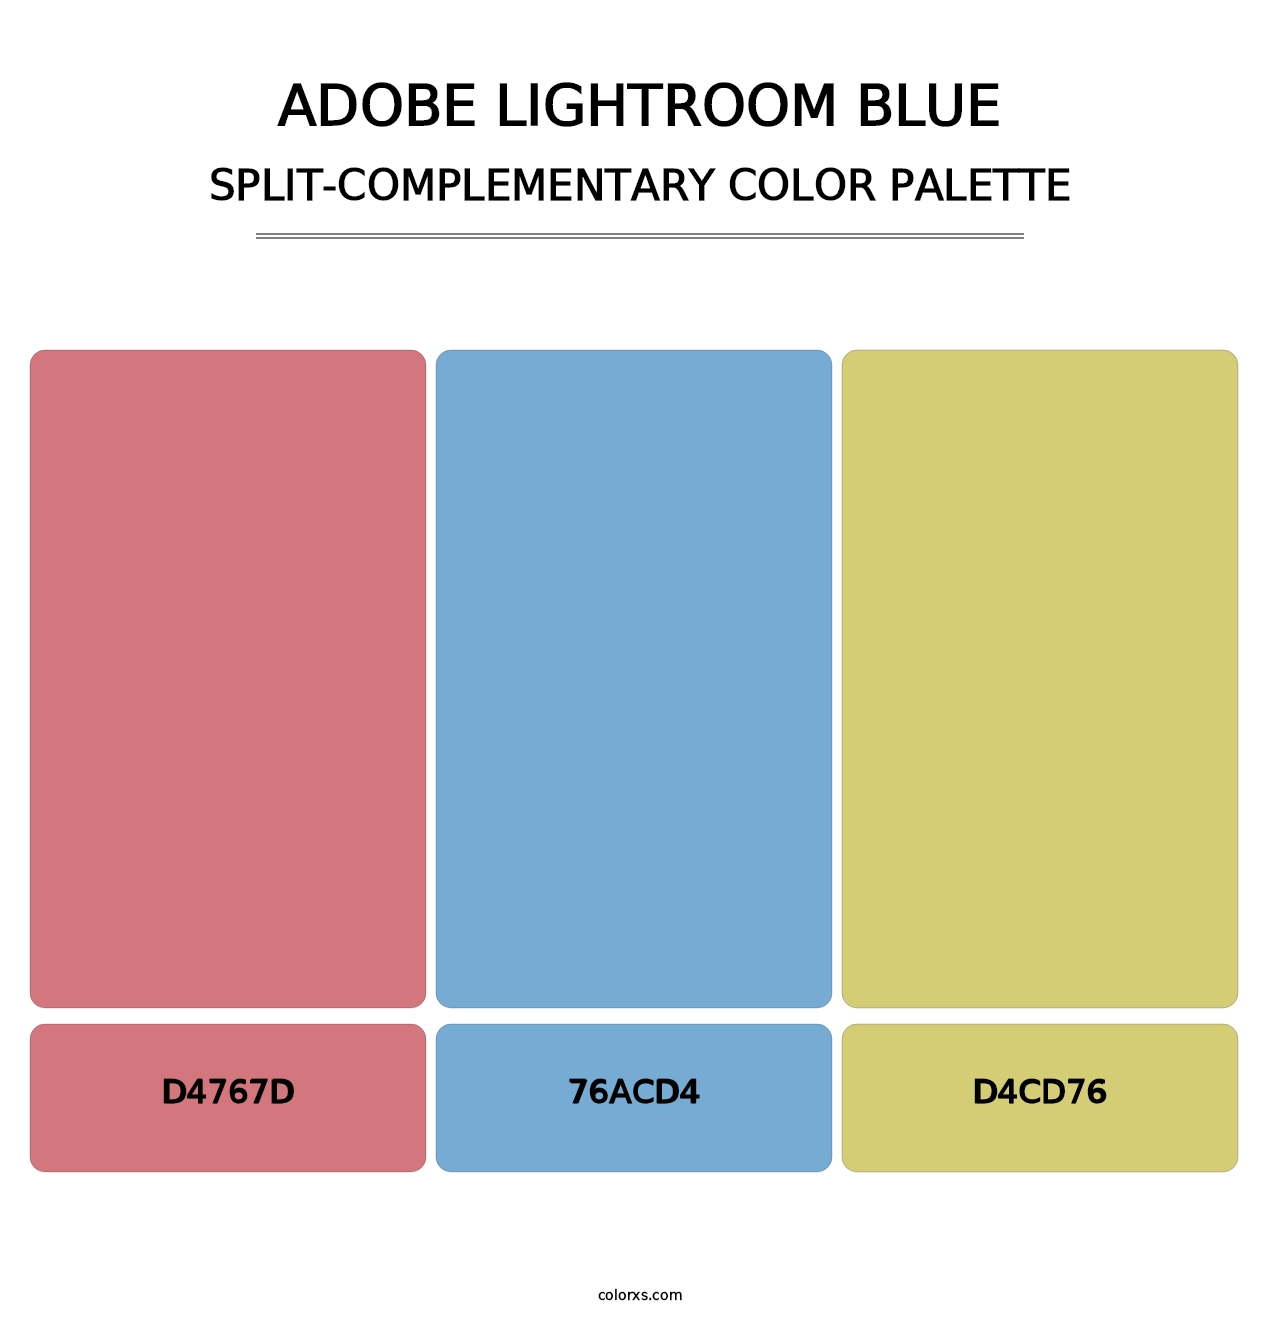 Adobe Lightroom Blue - Split-Complementary Color Palette